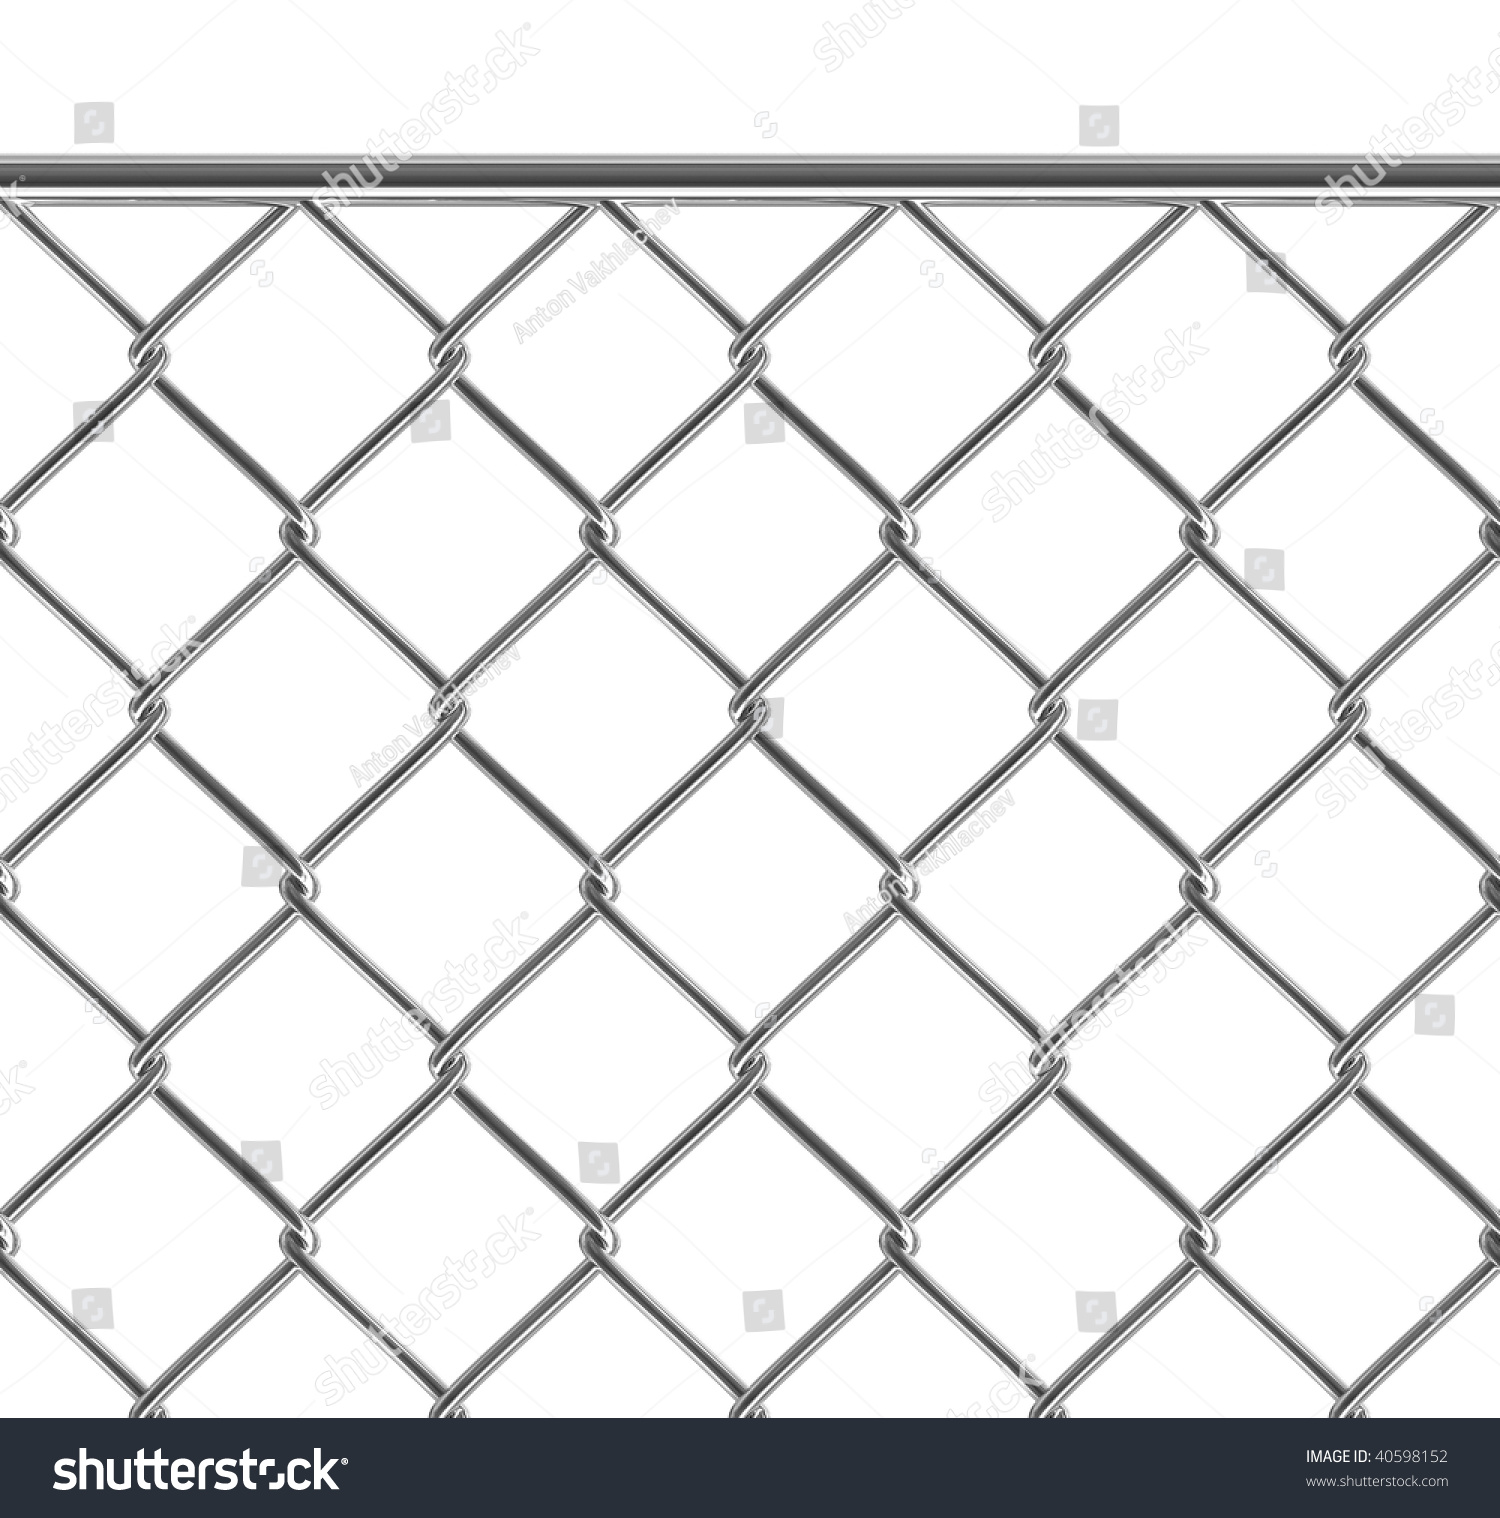 Metallic Fence Seamless Texture Isolated Stock Illustration 40598152 ...